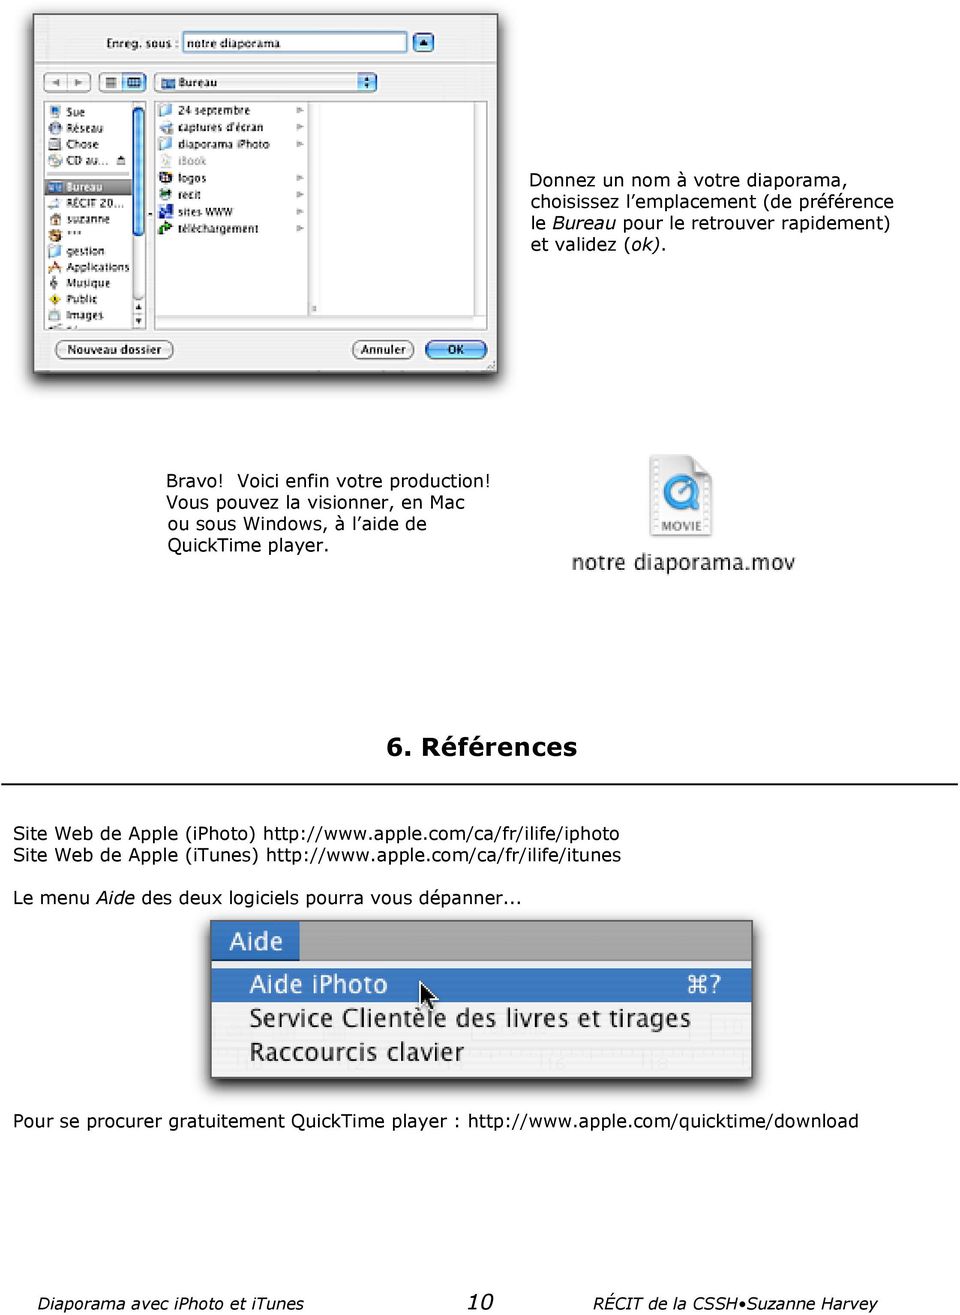 Références Site Web de Apple (iphoto) http://www.apple.com/ca/fr/ilife/iphoto Site Web de Apple (itunes) http://www.apple.com/ca/fr/ilife/itunes Le menu Aide des deux logiciels pourra vous dépanner.